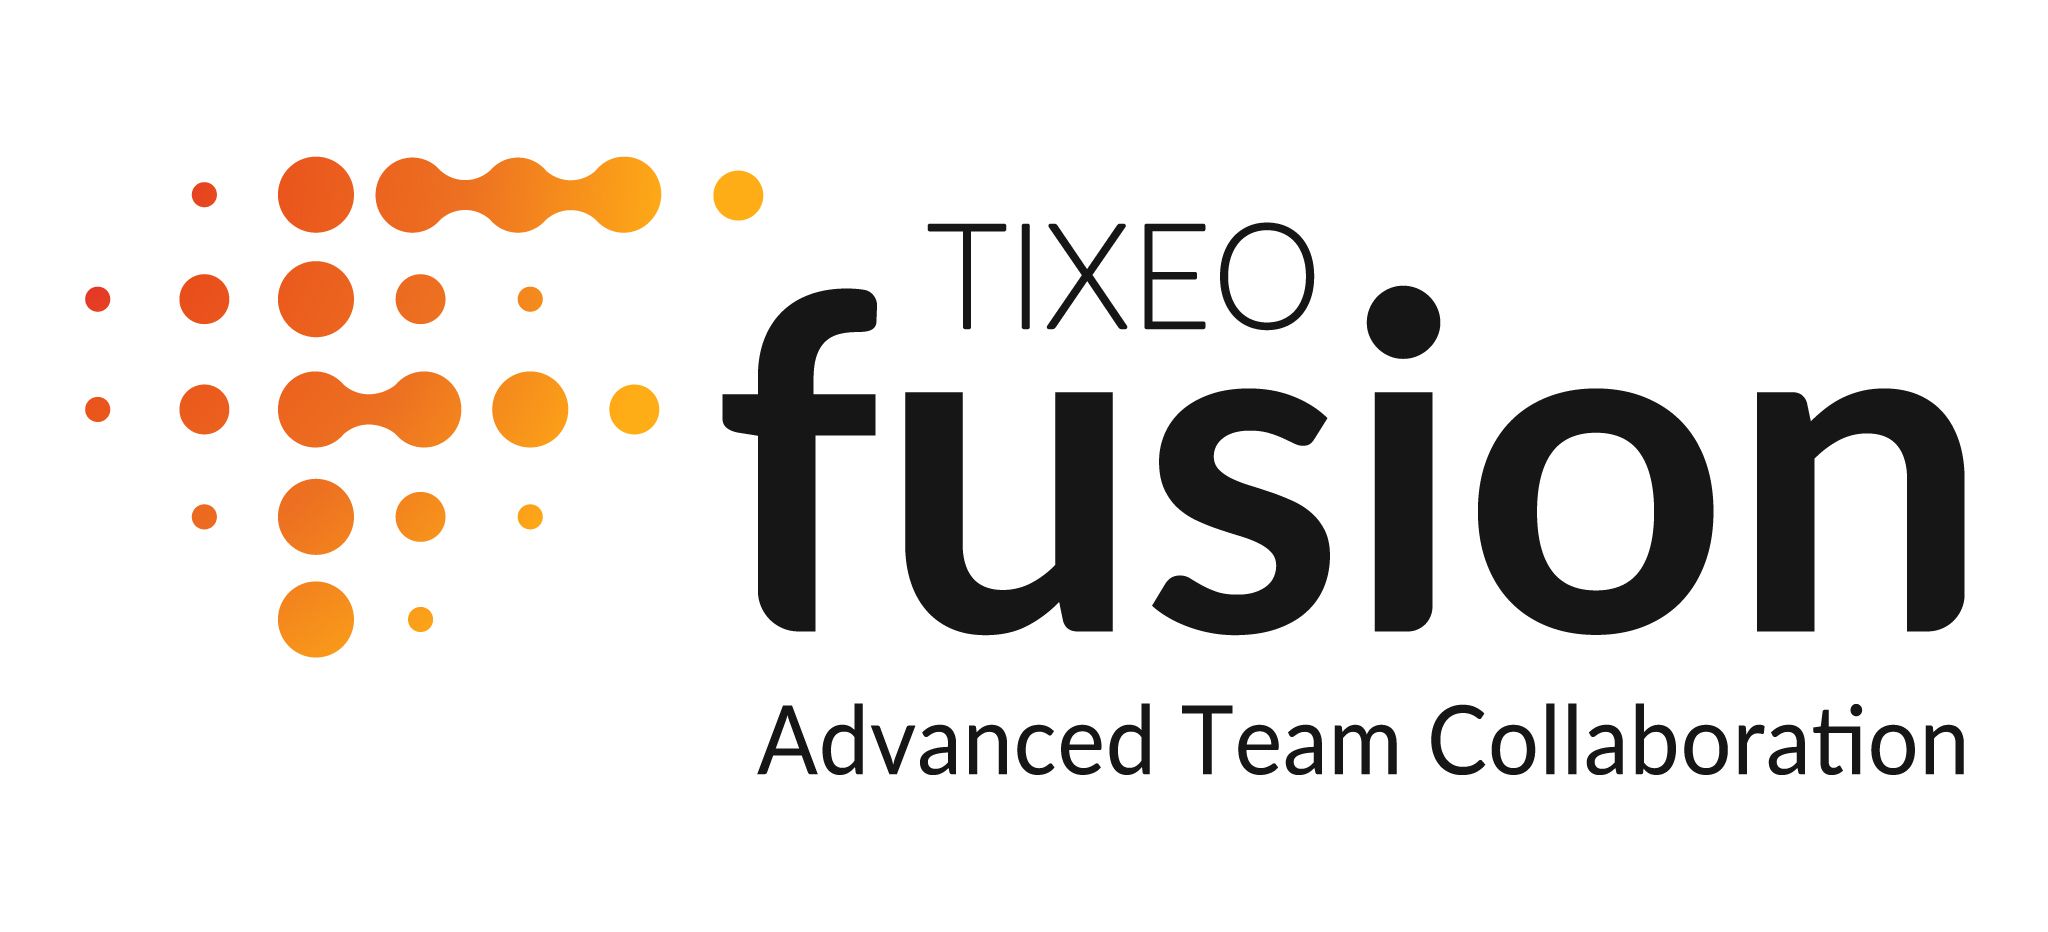 Tixeo lanza TixeoFusion y revoluciona el trabajo remoto de equipos